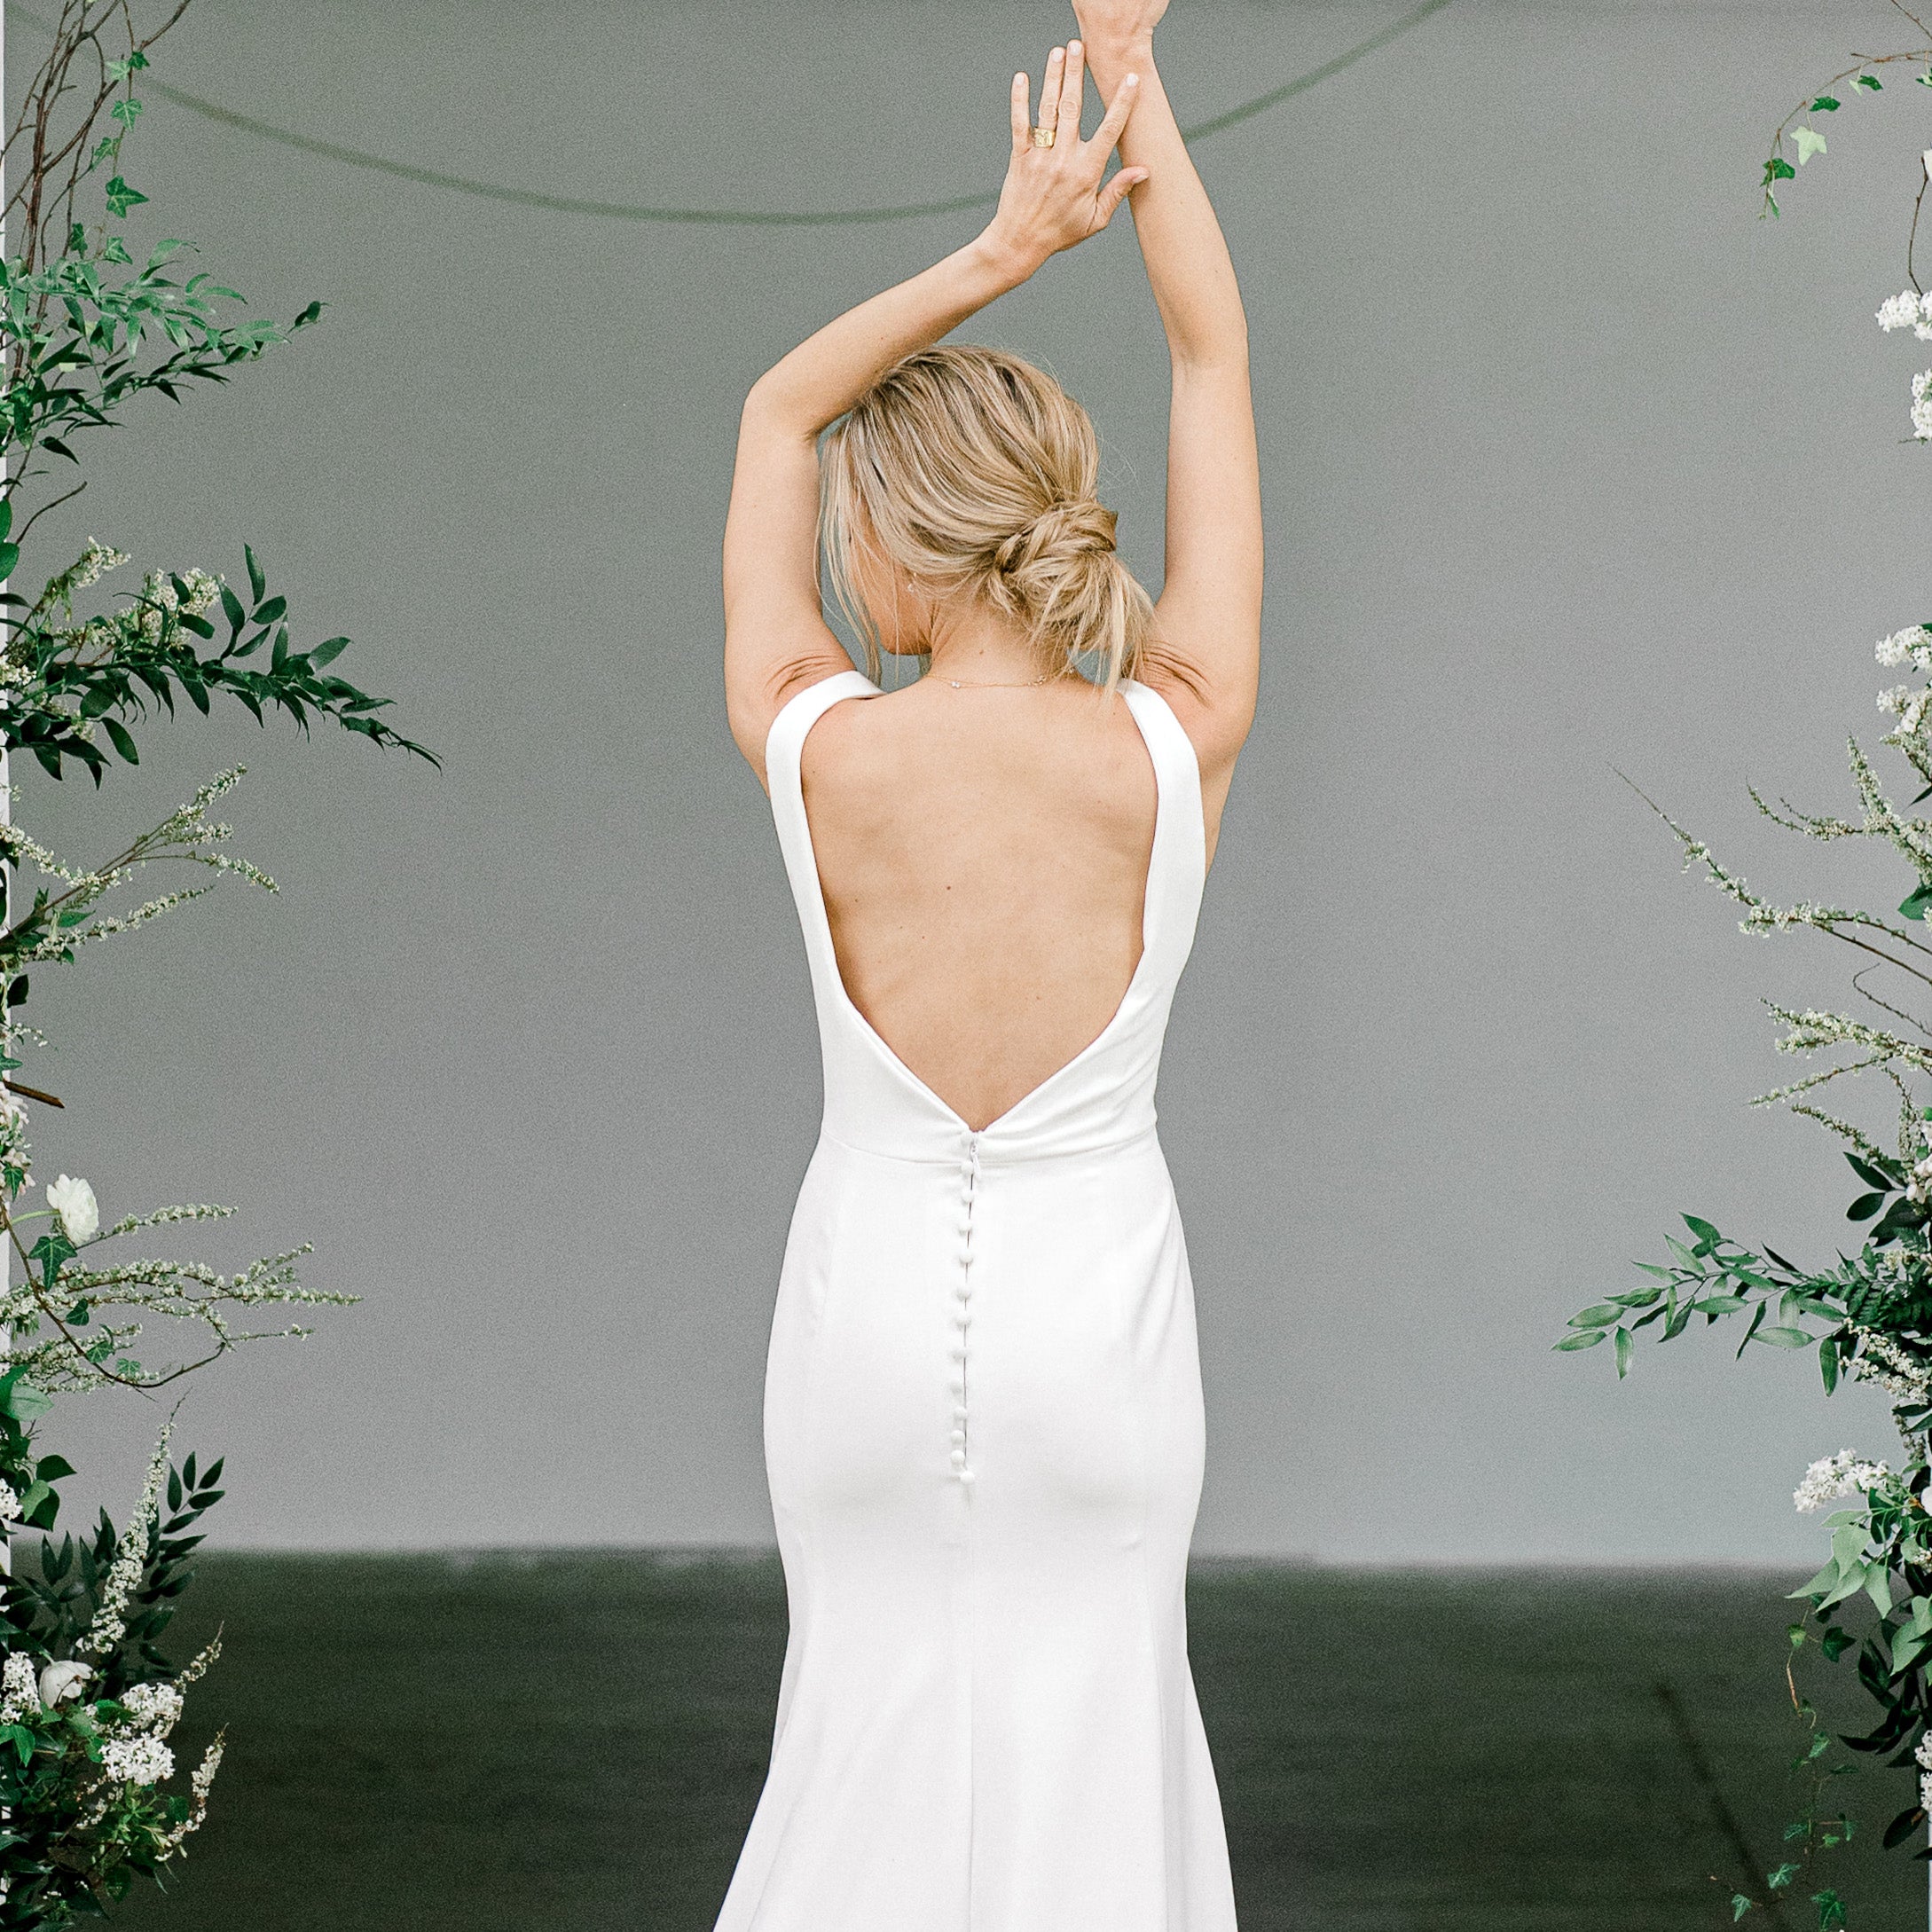 Stretch Fabric for Wedding Gowns - Bridal Fabrics